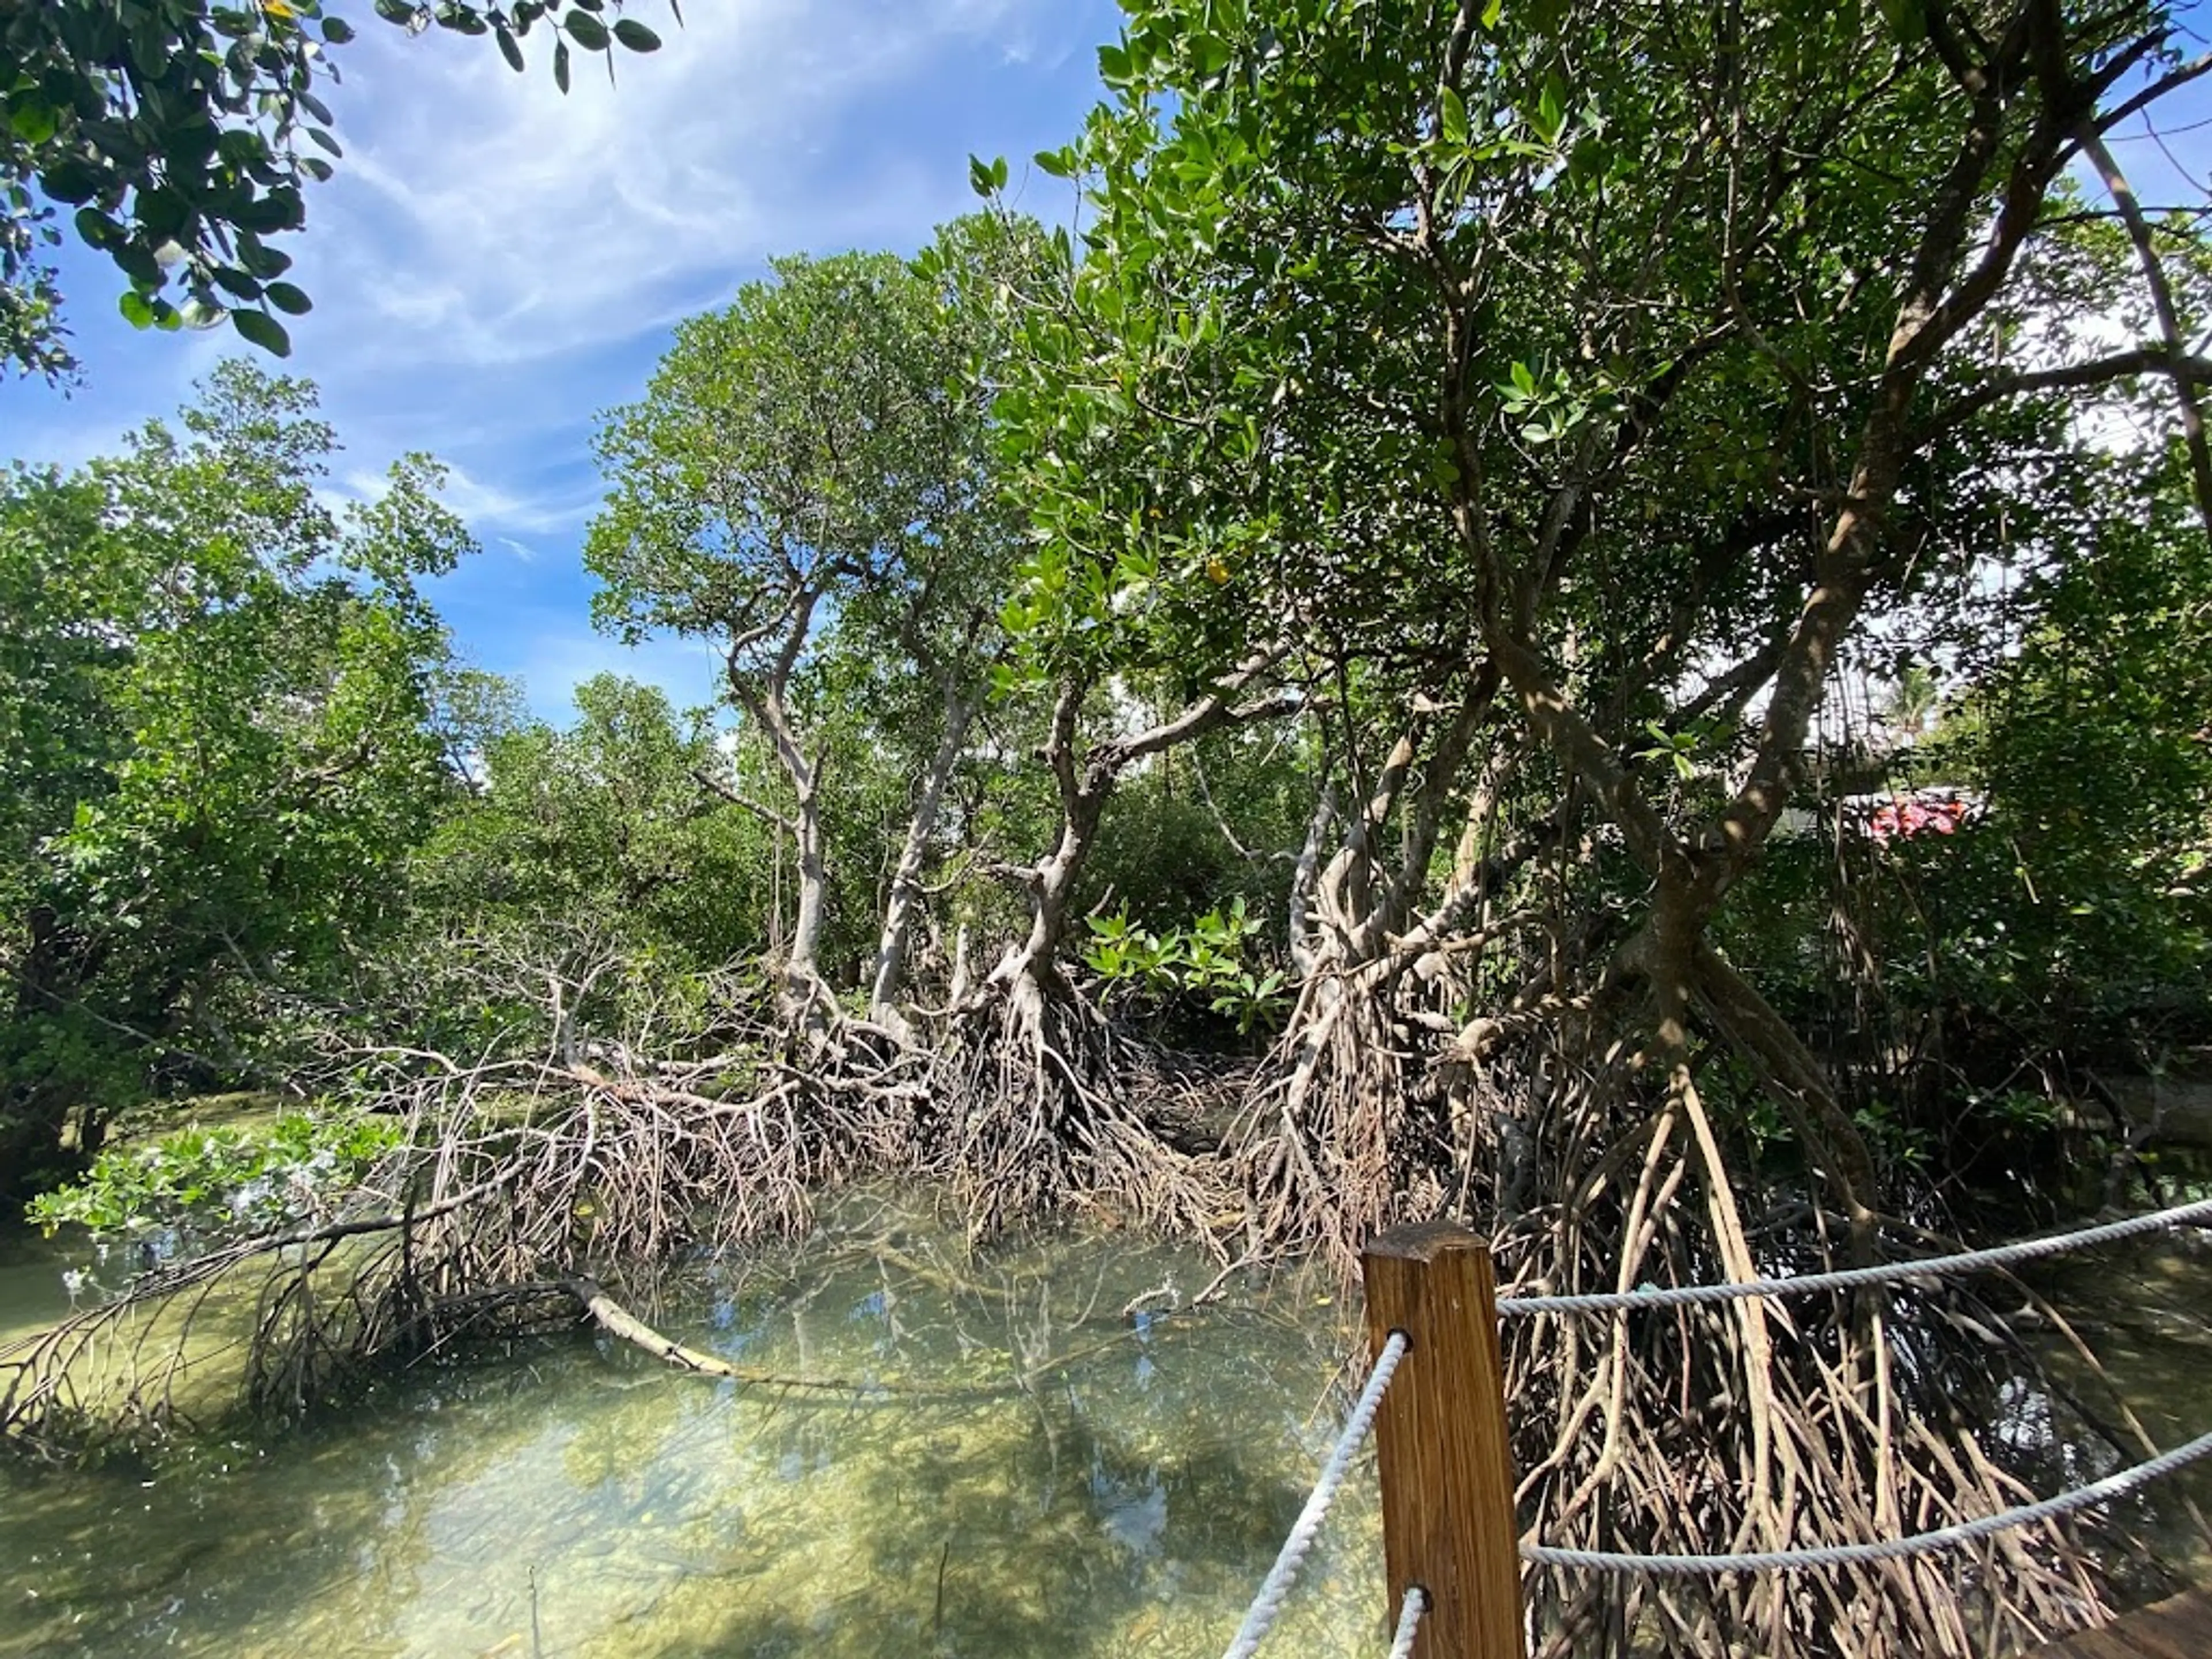 Boracay Mangrove Forest